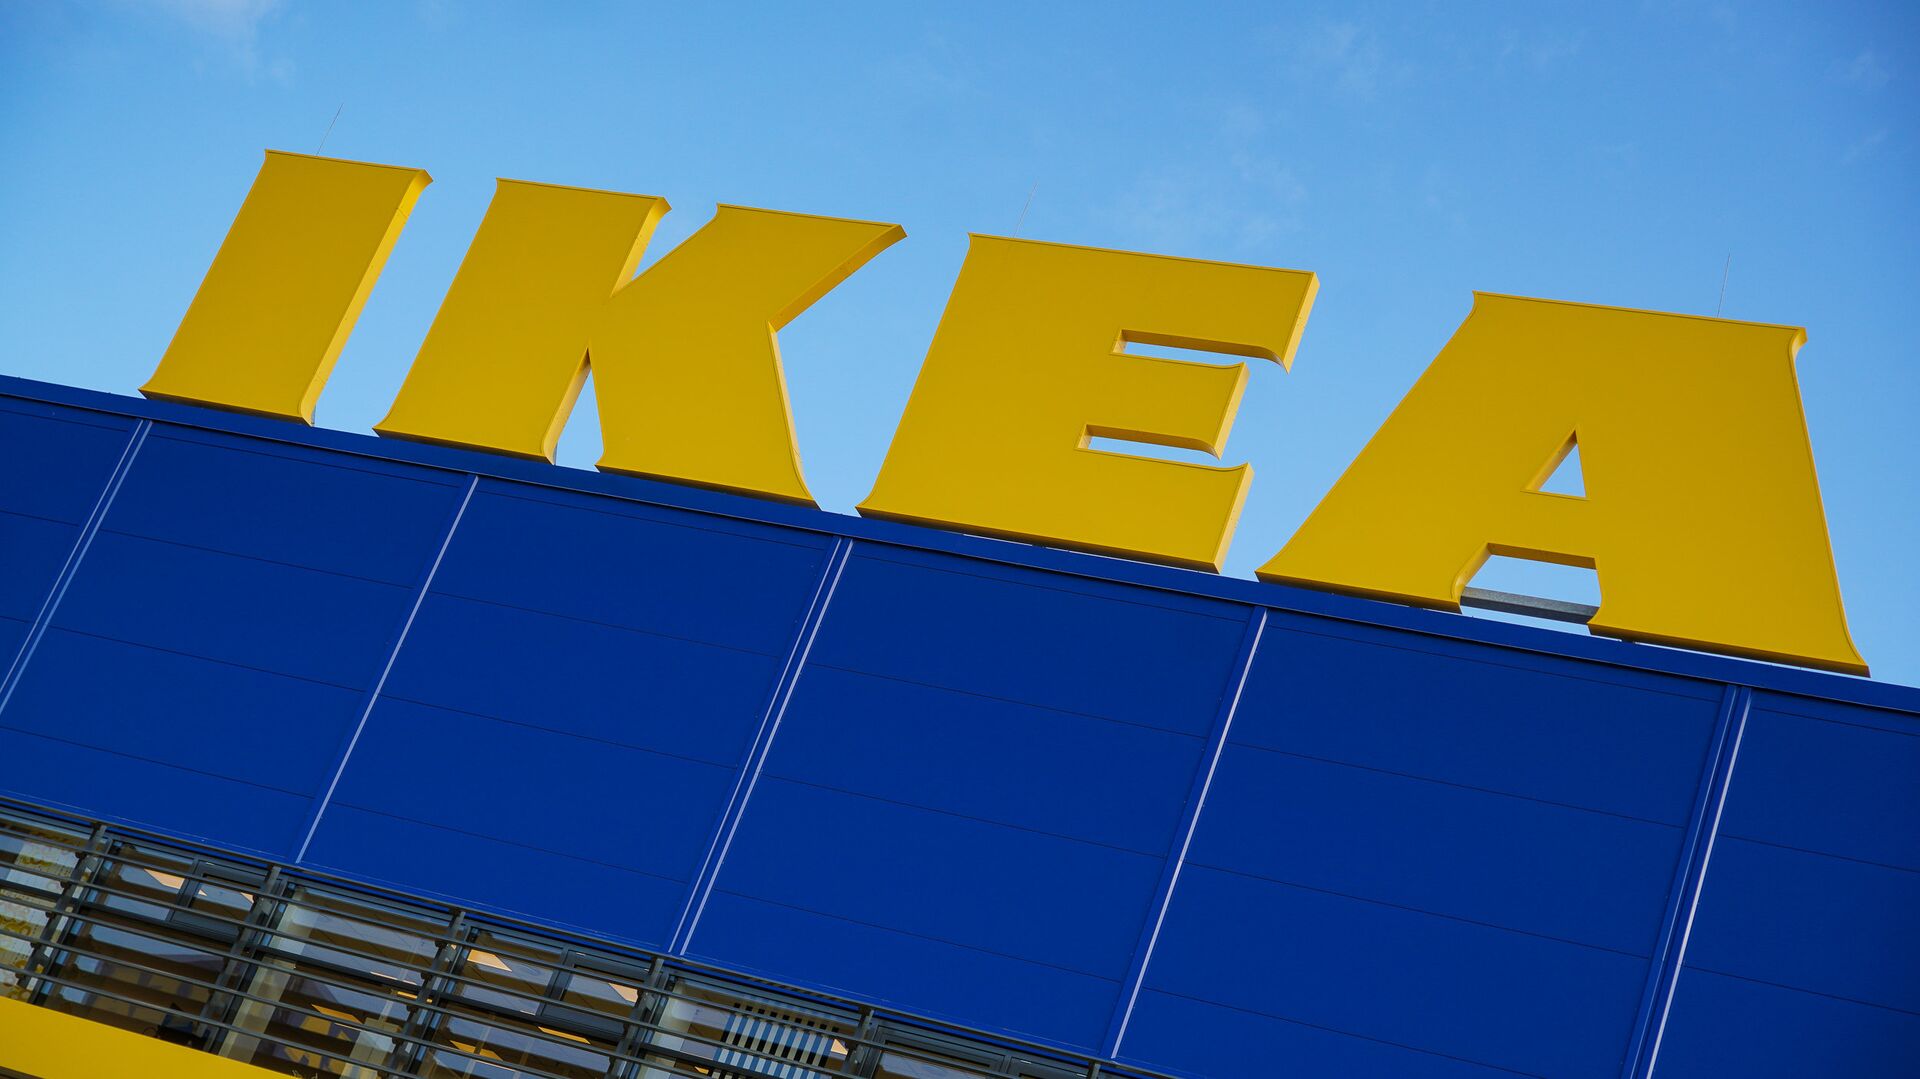 Открытие магазина IKEA в Риге - Sputnik Латвия, 1920, 15.12.2021